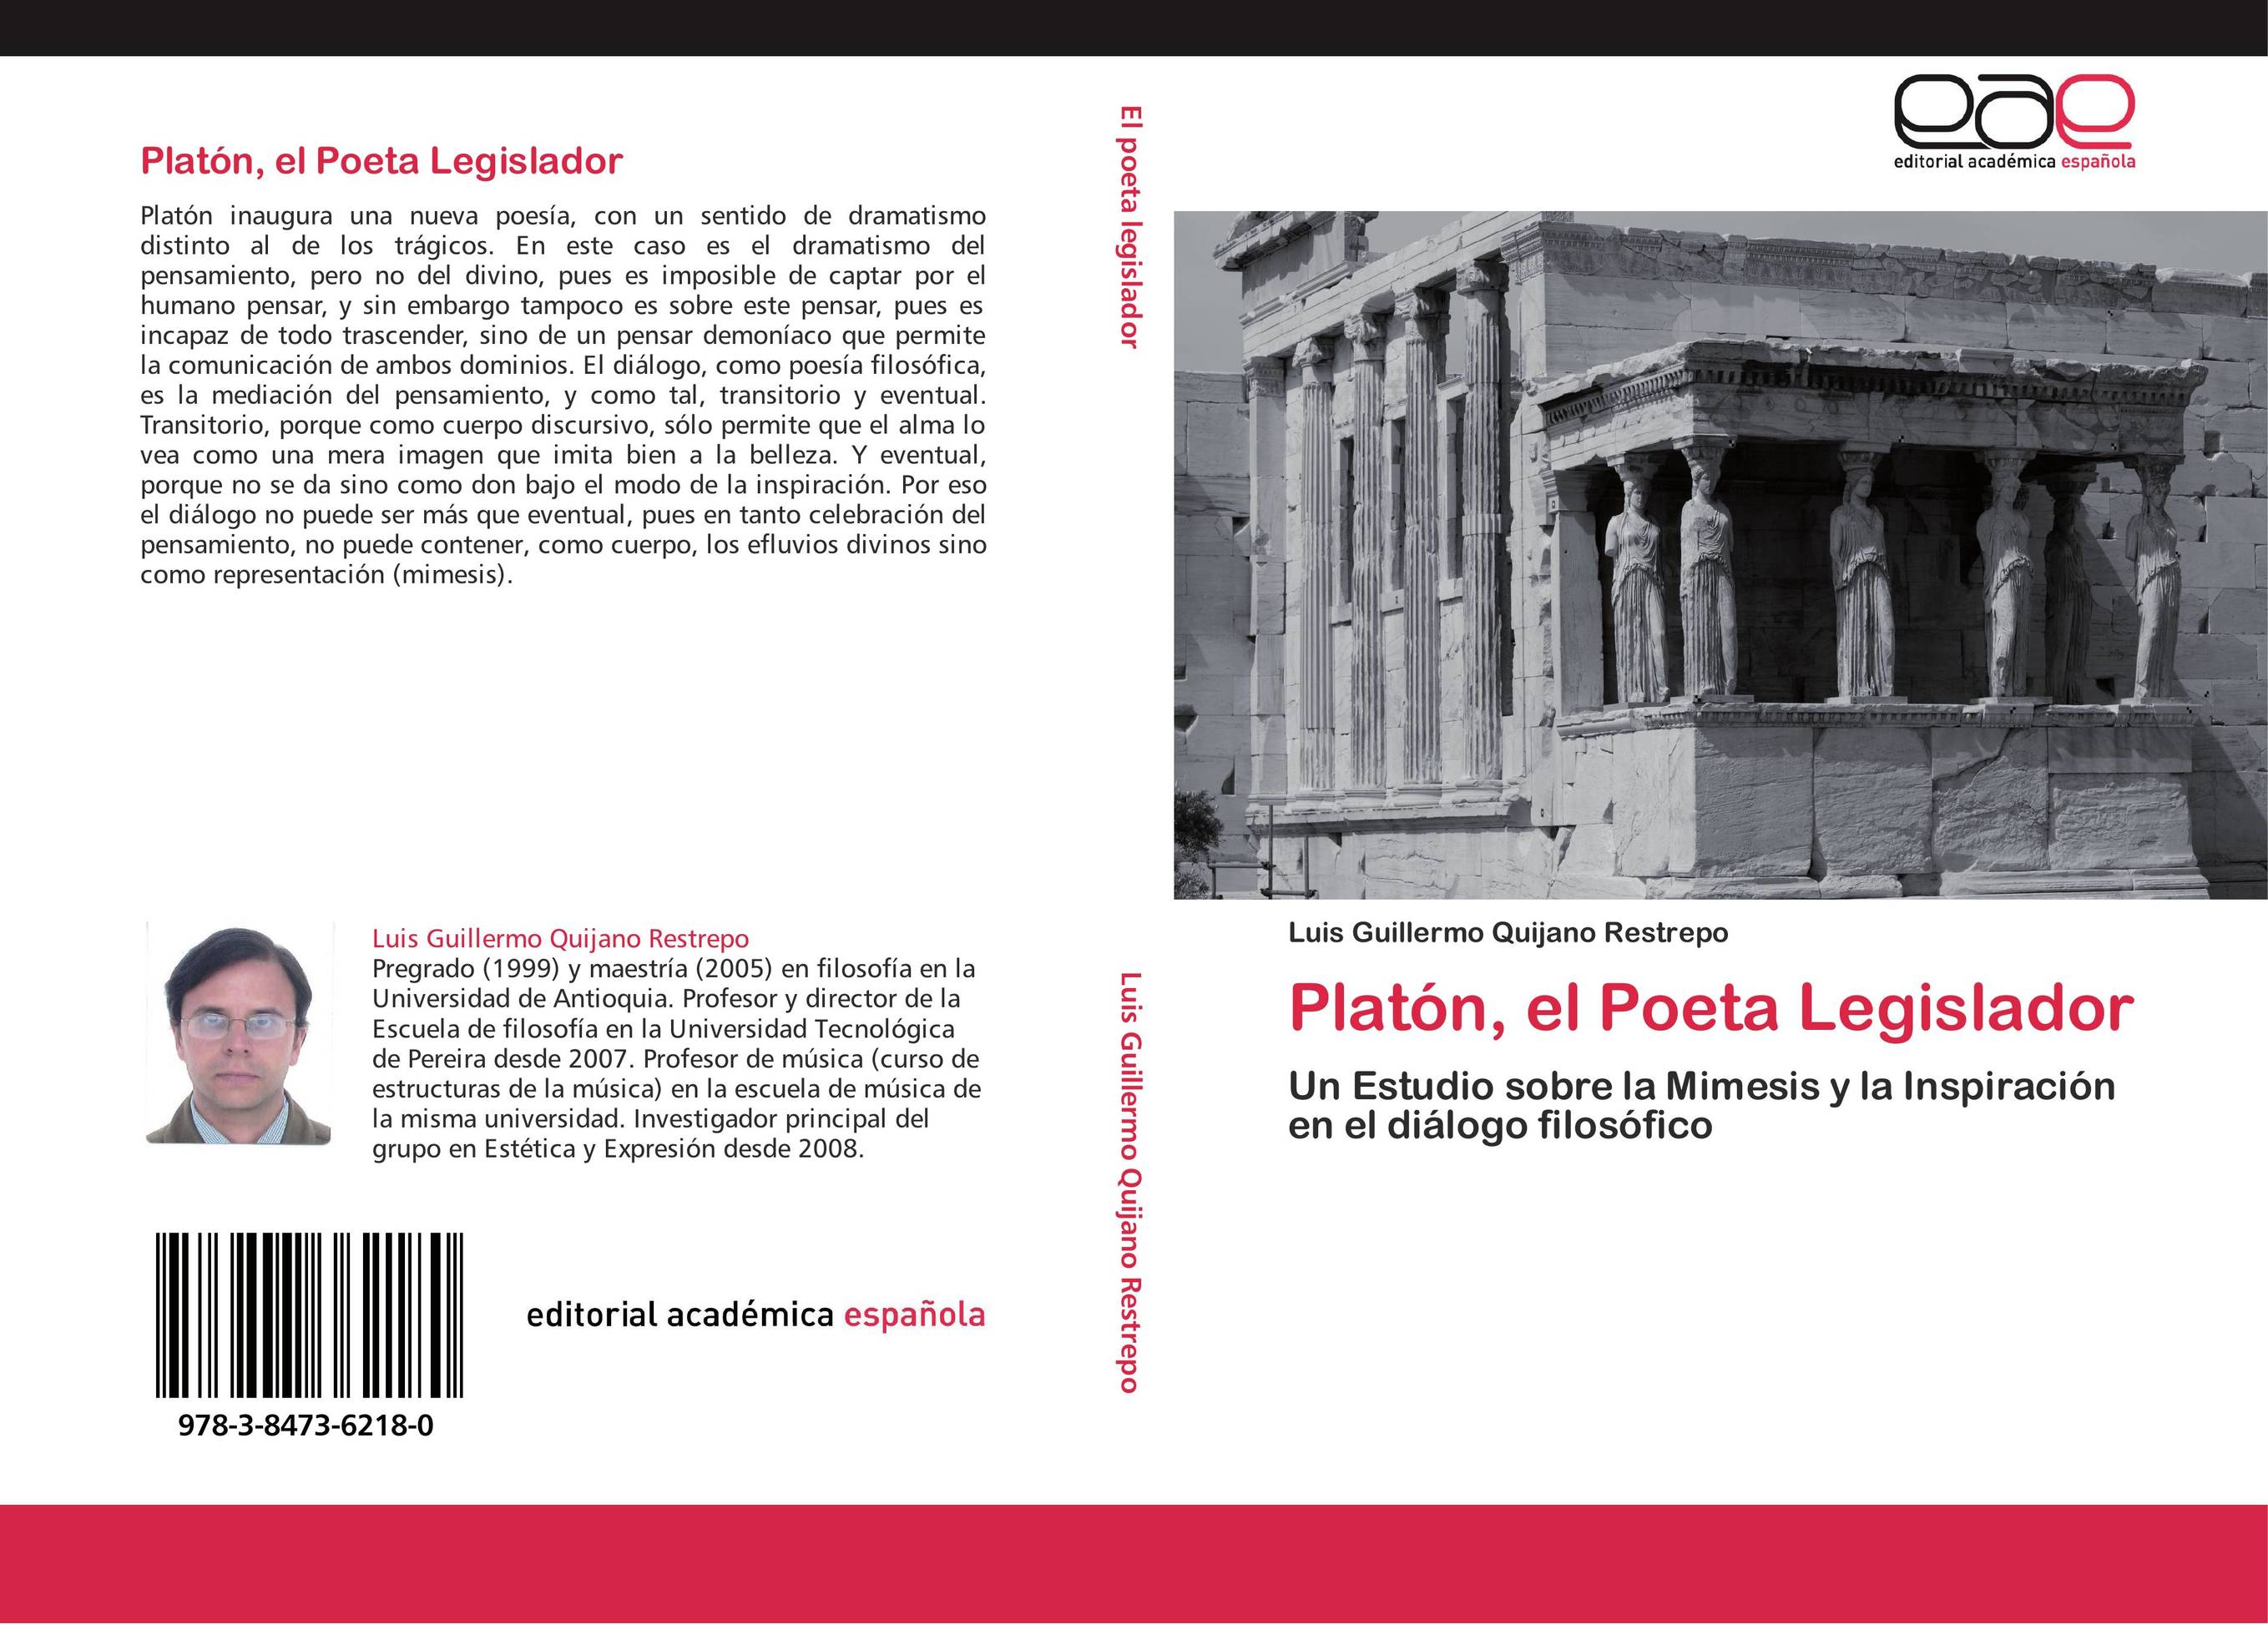 Platón, el Poeta Legislador